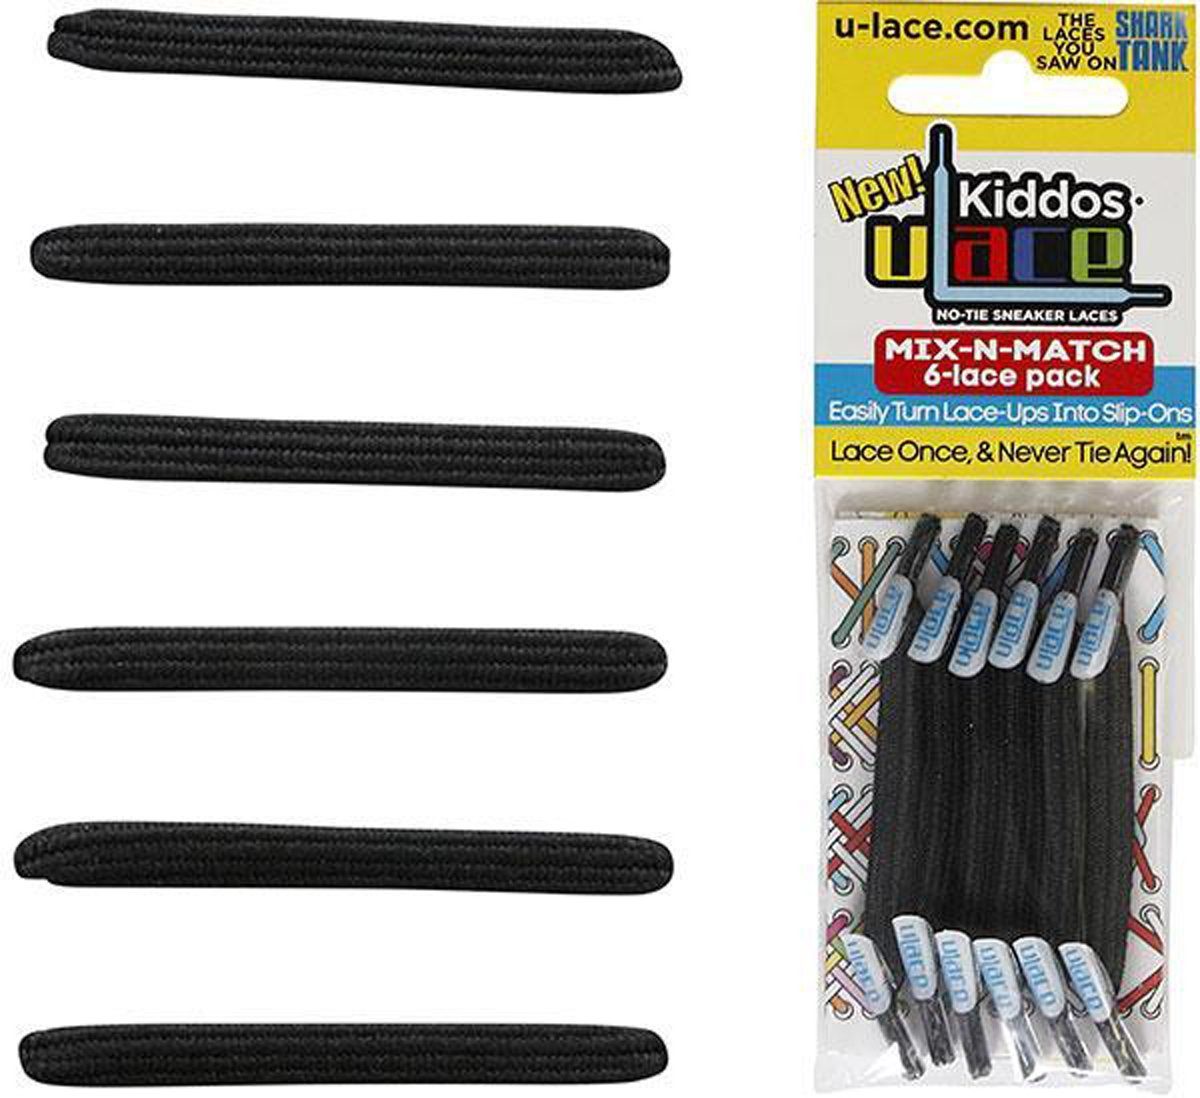 U-Laces Schnürsenkel Kiddos - elastische Schnürsenkel mit Wiederhaken für Kinder Black